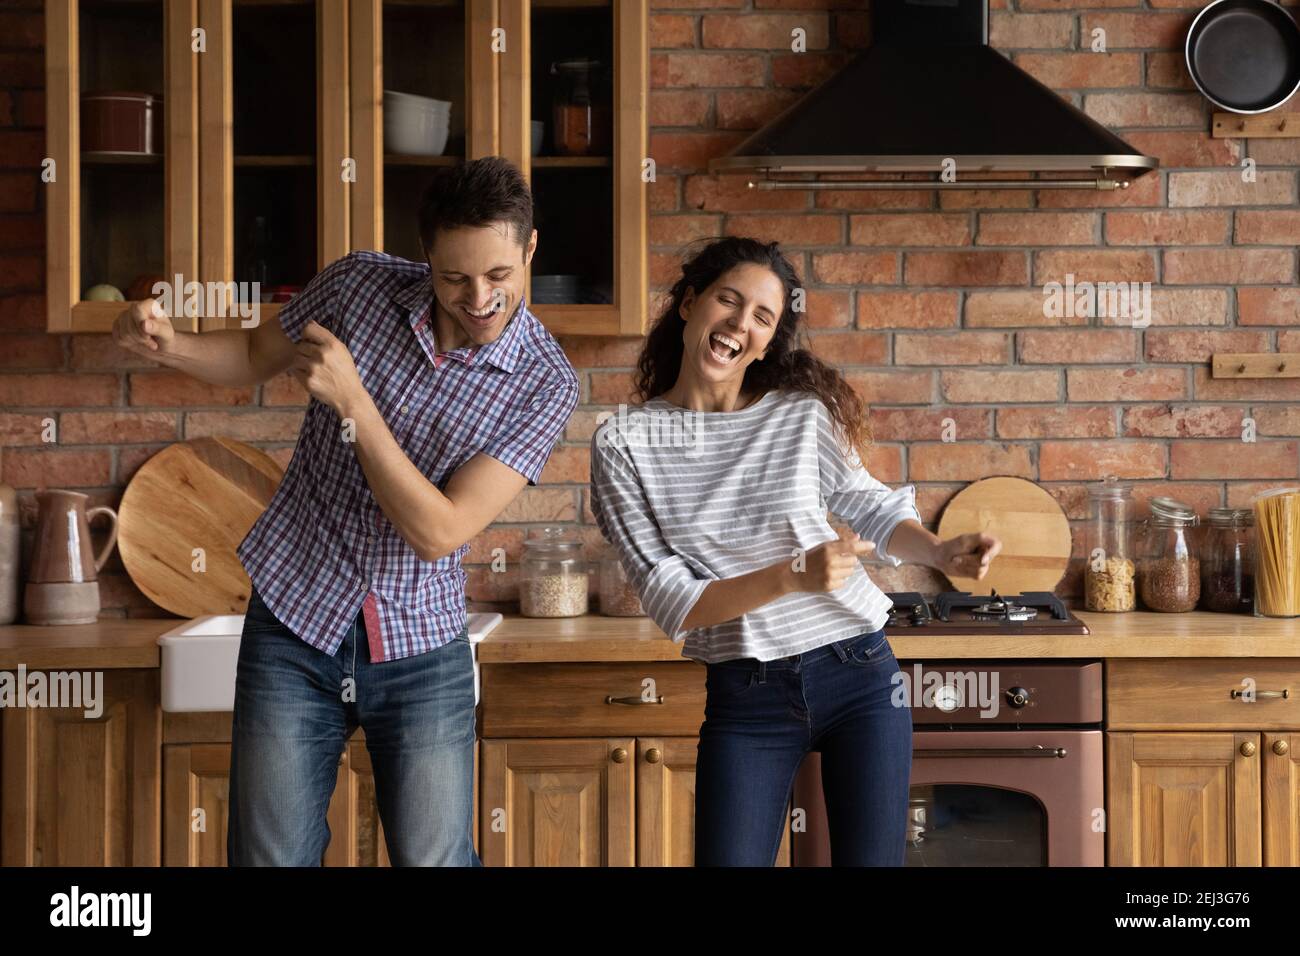 Un jeune couple joyeux dansant dans une cuisine moderne, s'amusant Banque D'Images